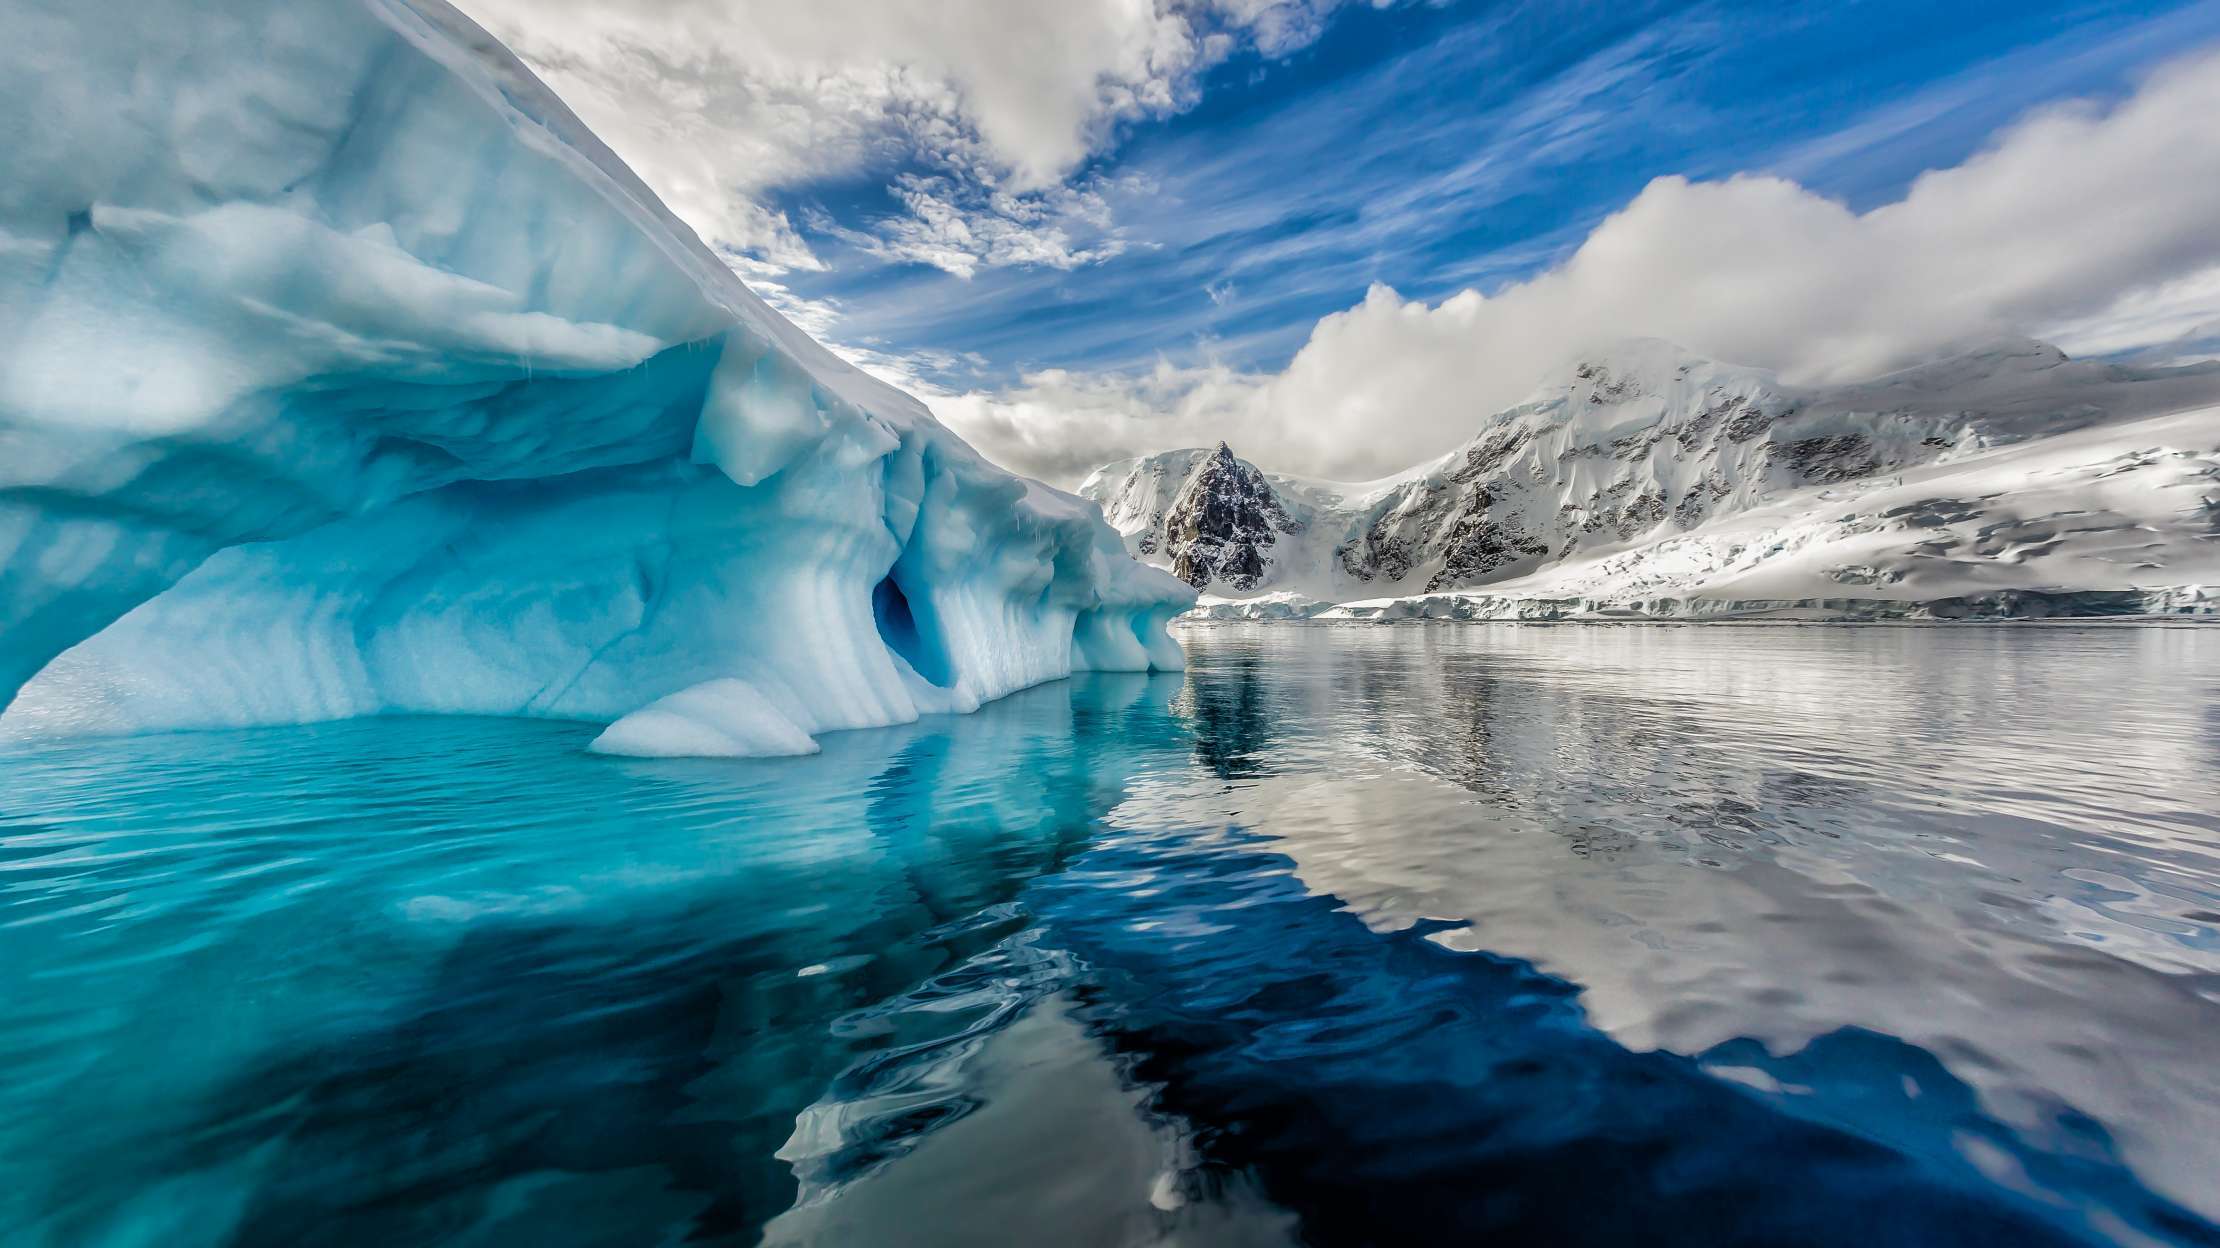 Pine-Island-Gletscher in der Antarktis: Riesiger Eisberg abgebrochen